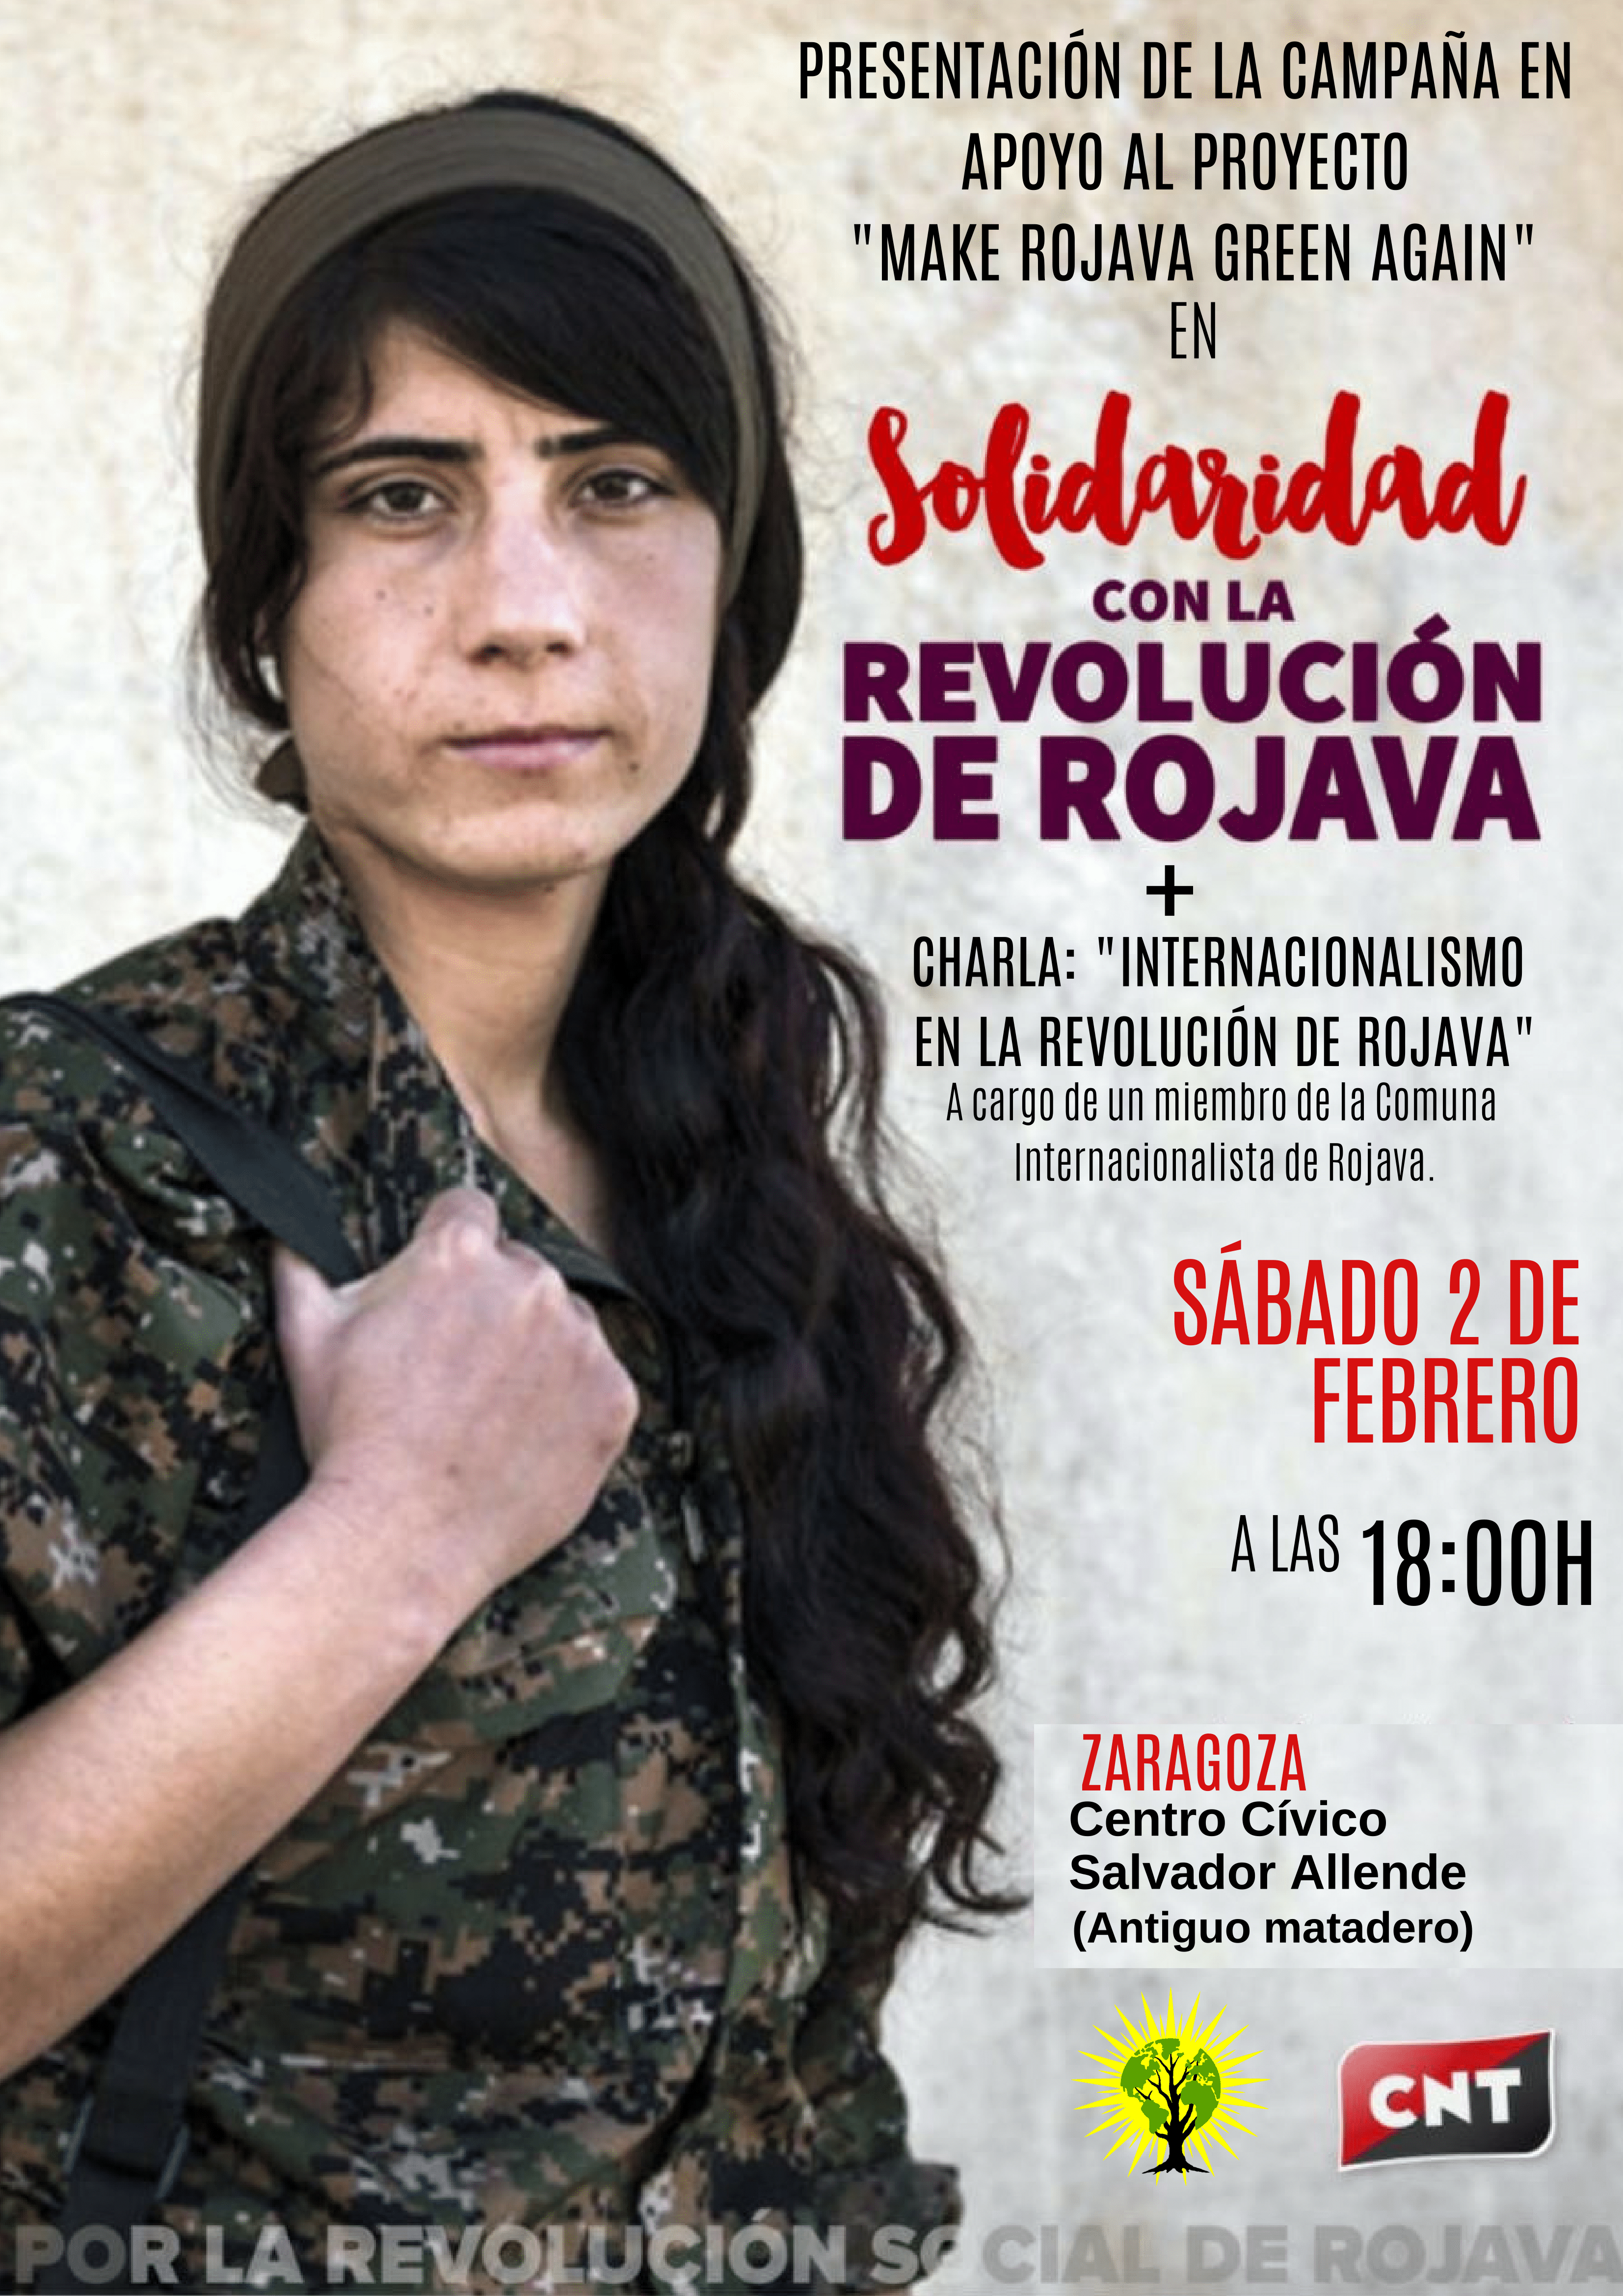 [2F] CNT Zaragoza celebrará una charla en apoyo de la campaña Make Rojava Green Again